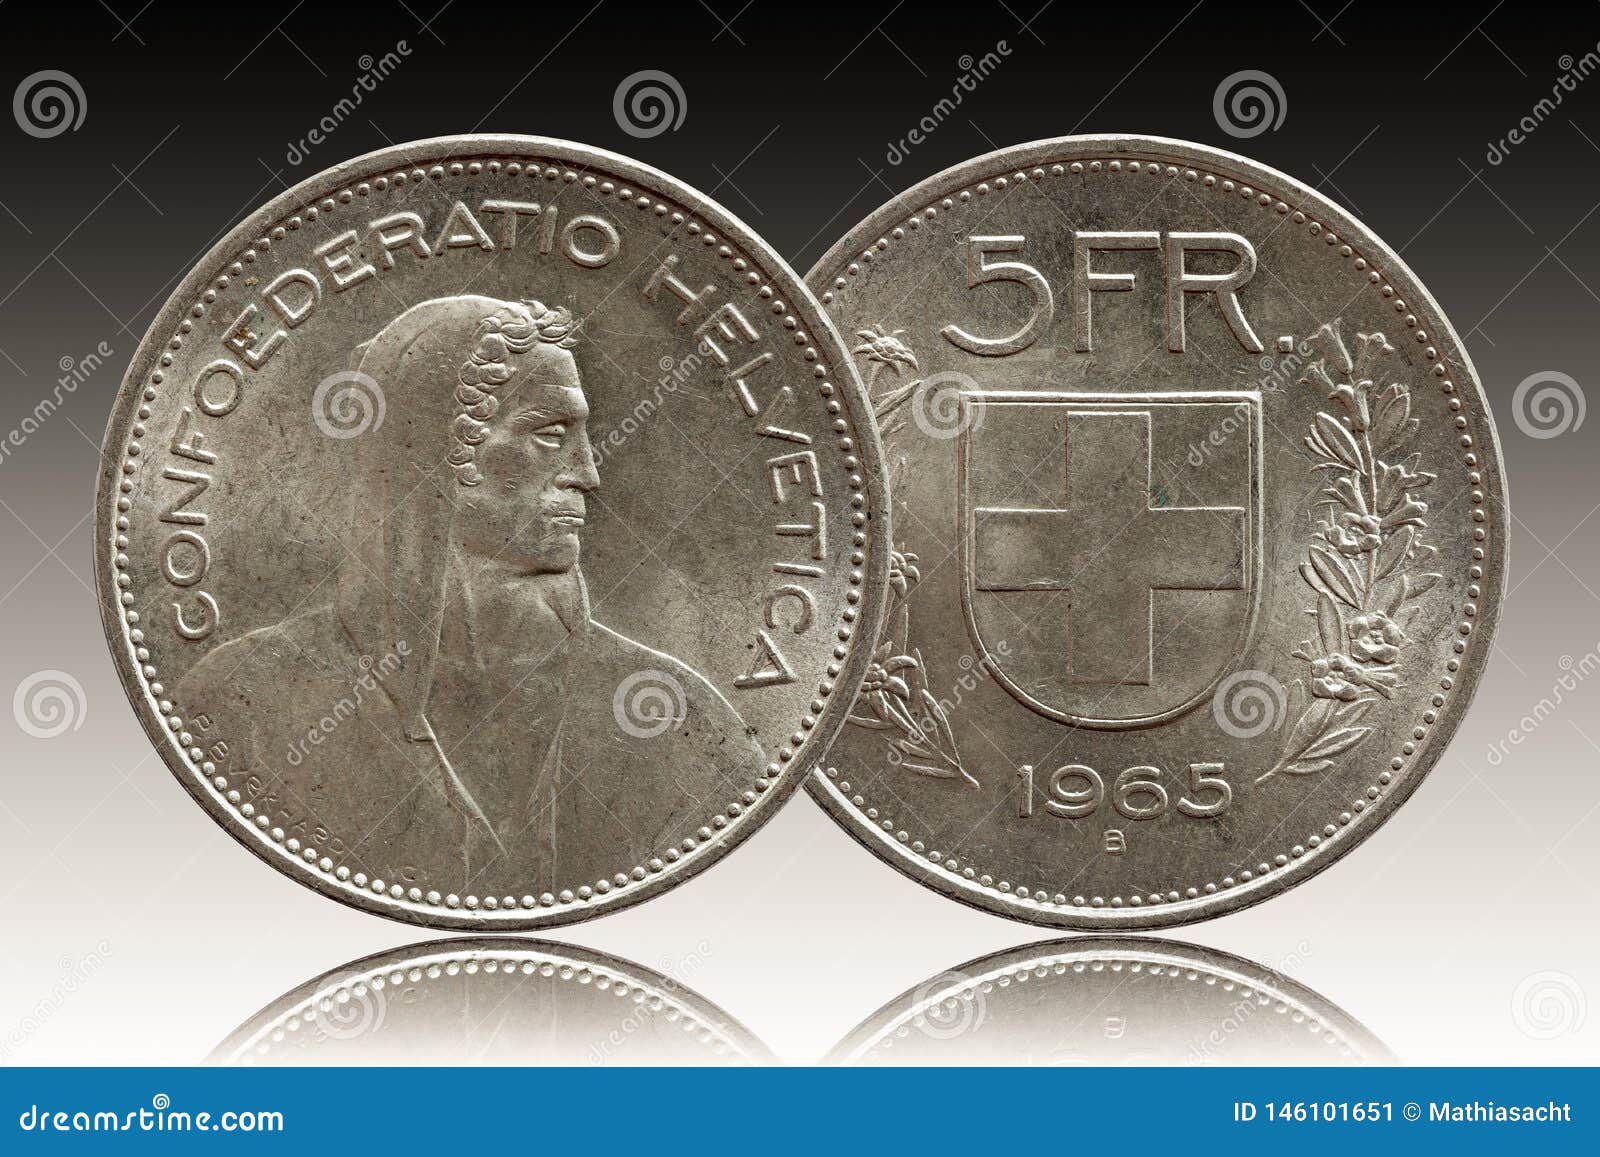 瑞士银币 1928年B 2法郎 中邮网[集邮/钱币/邮票/金银币/收藏资讯]收藏品商城